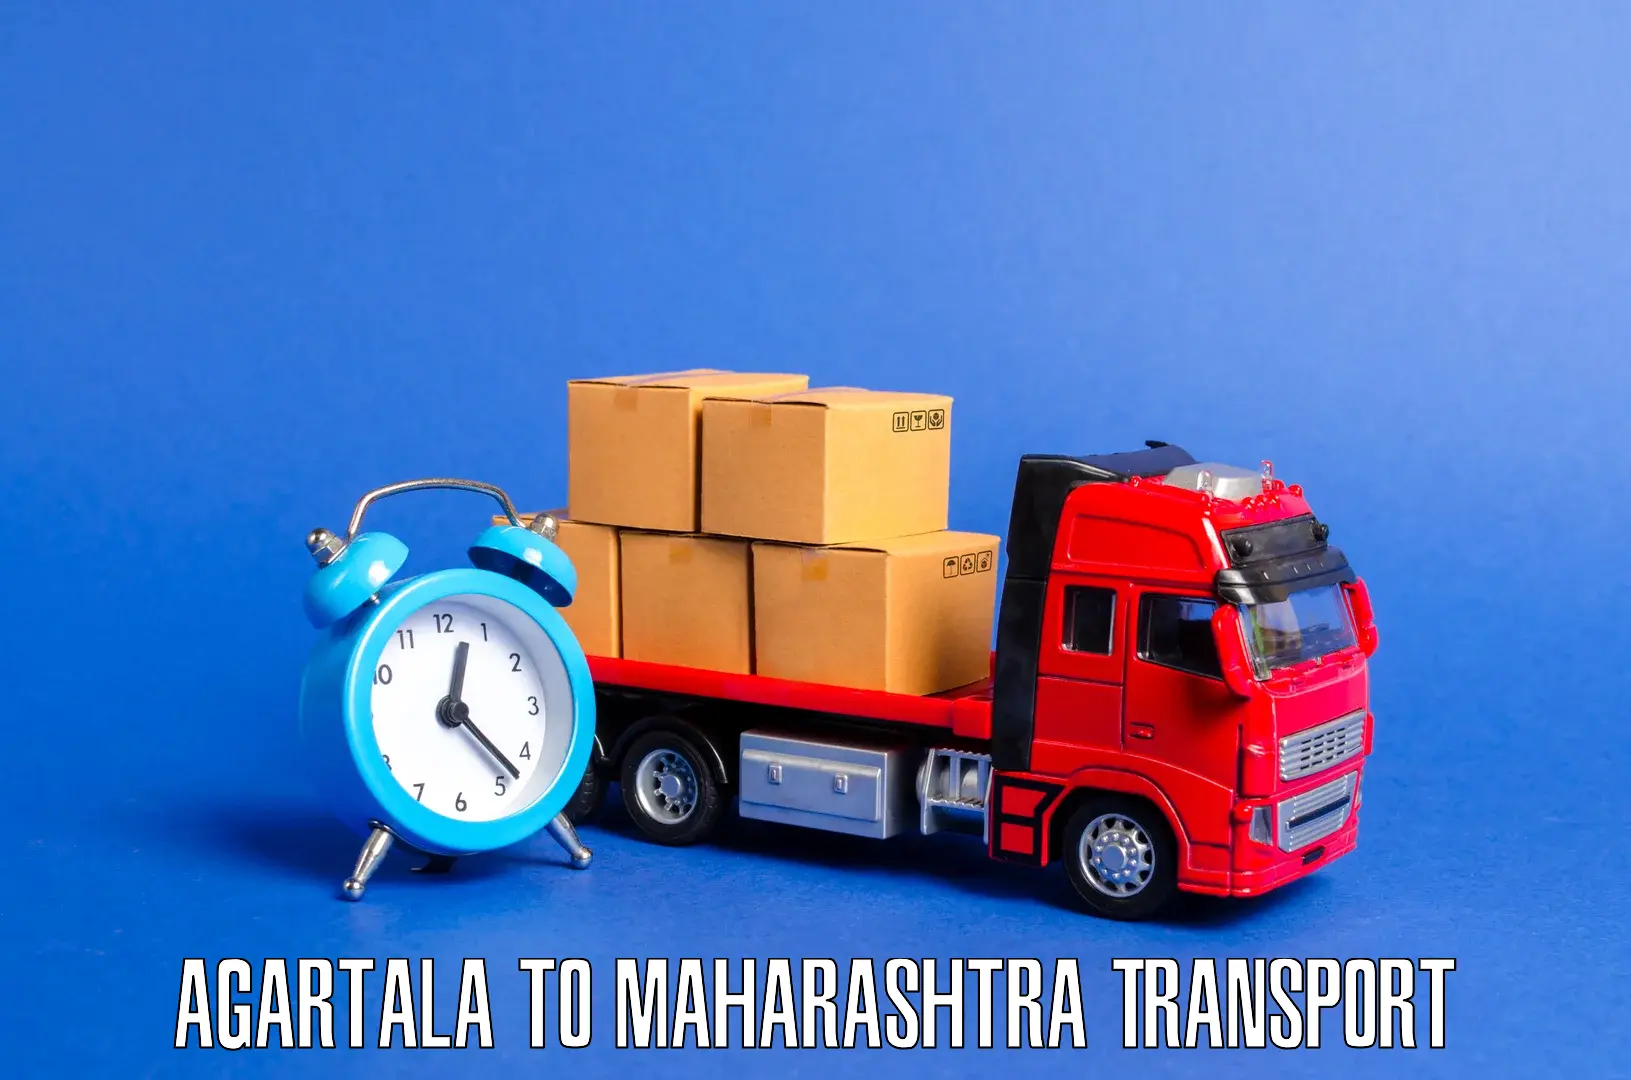 Shipping services in Agartala to Shivajinagar